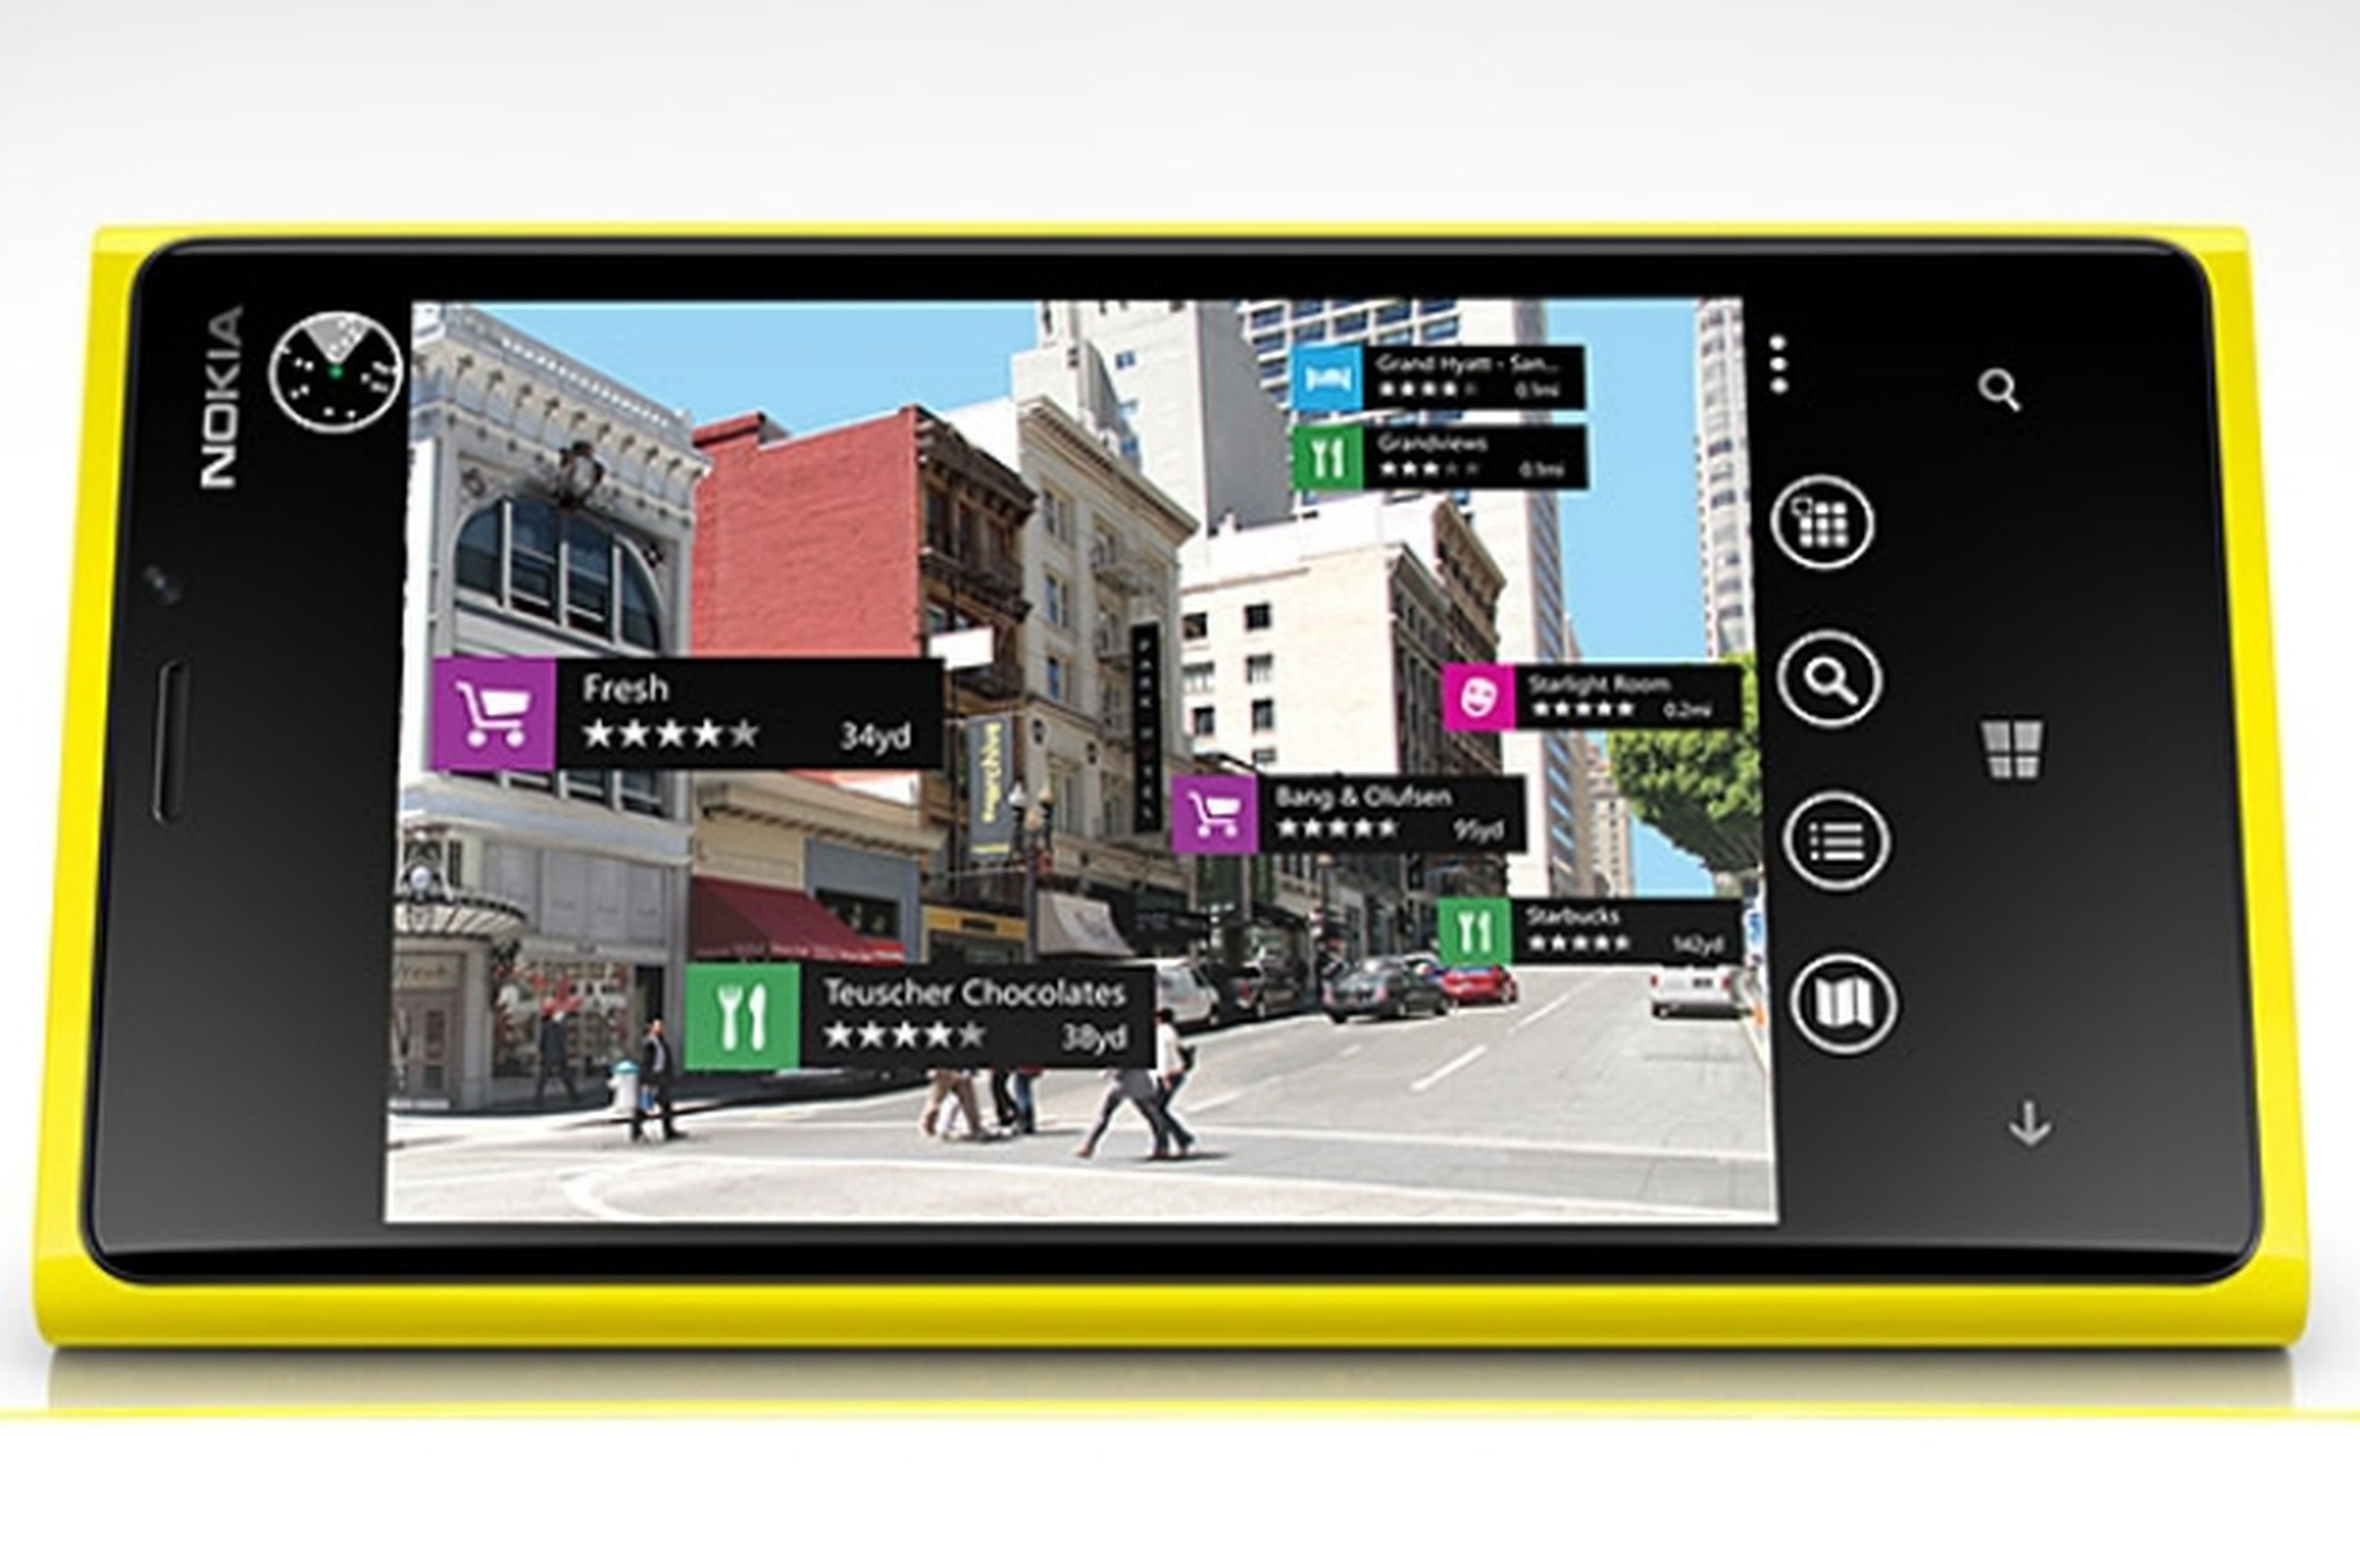 La FCC confirma el lanzamiento de una tablet de Nokia